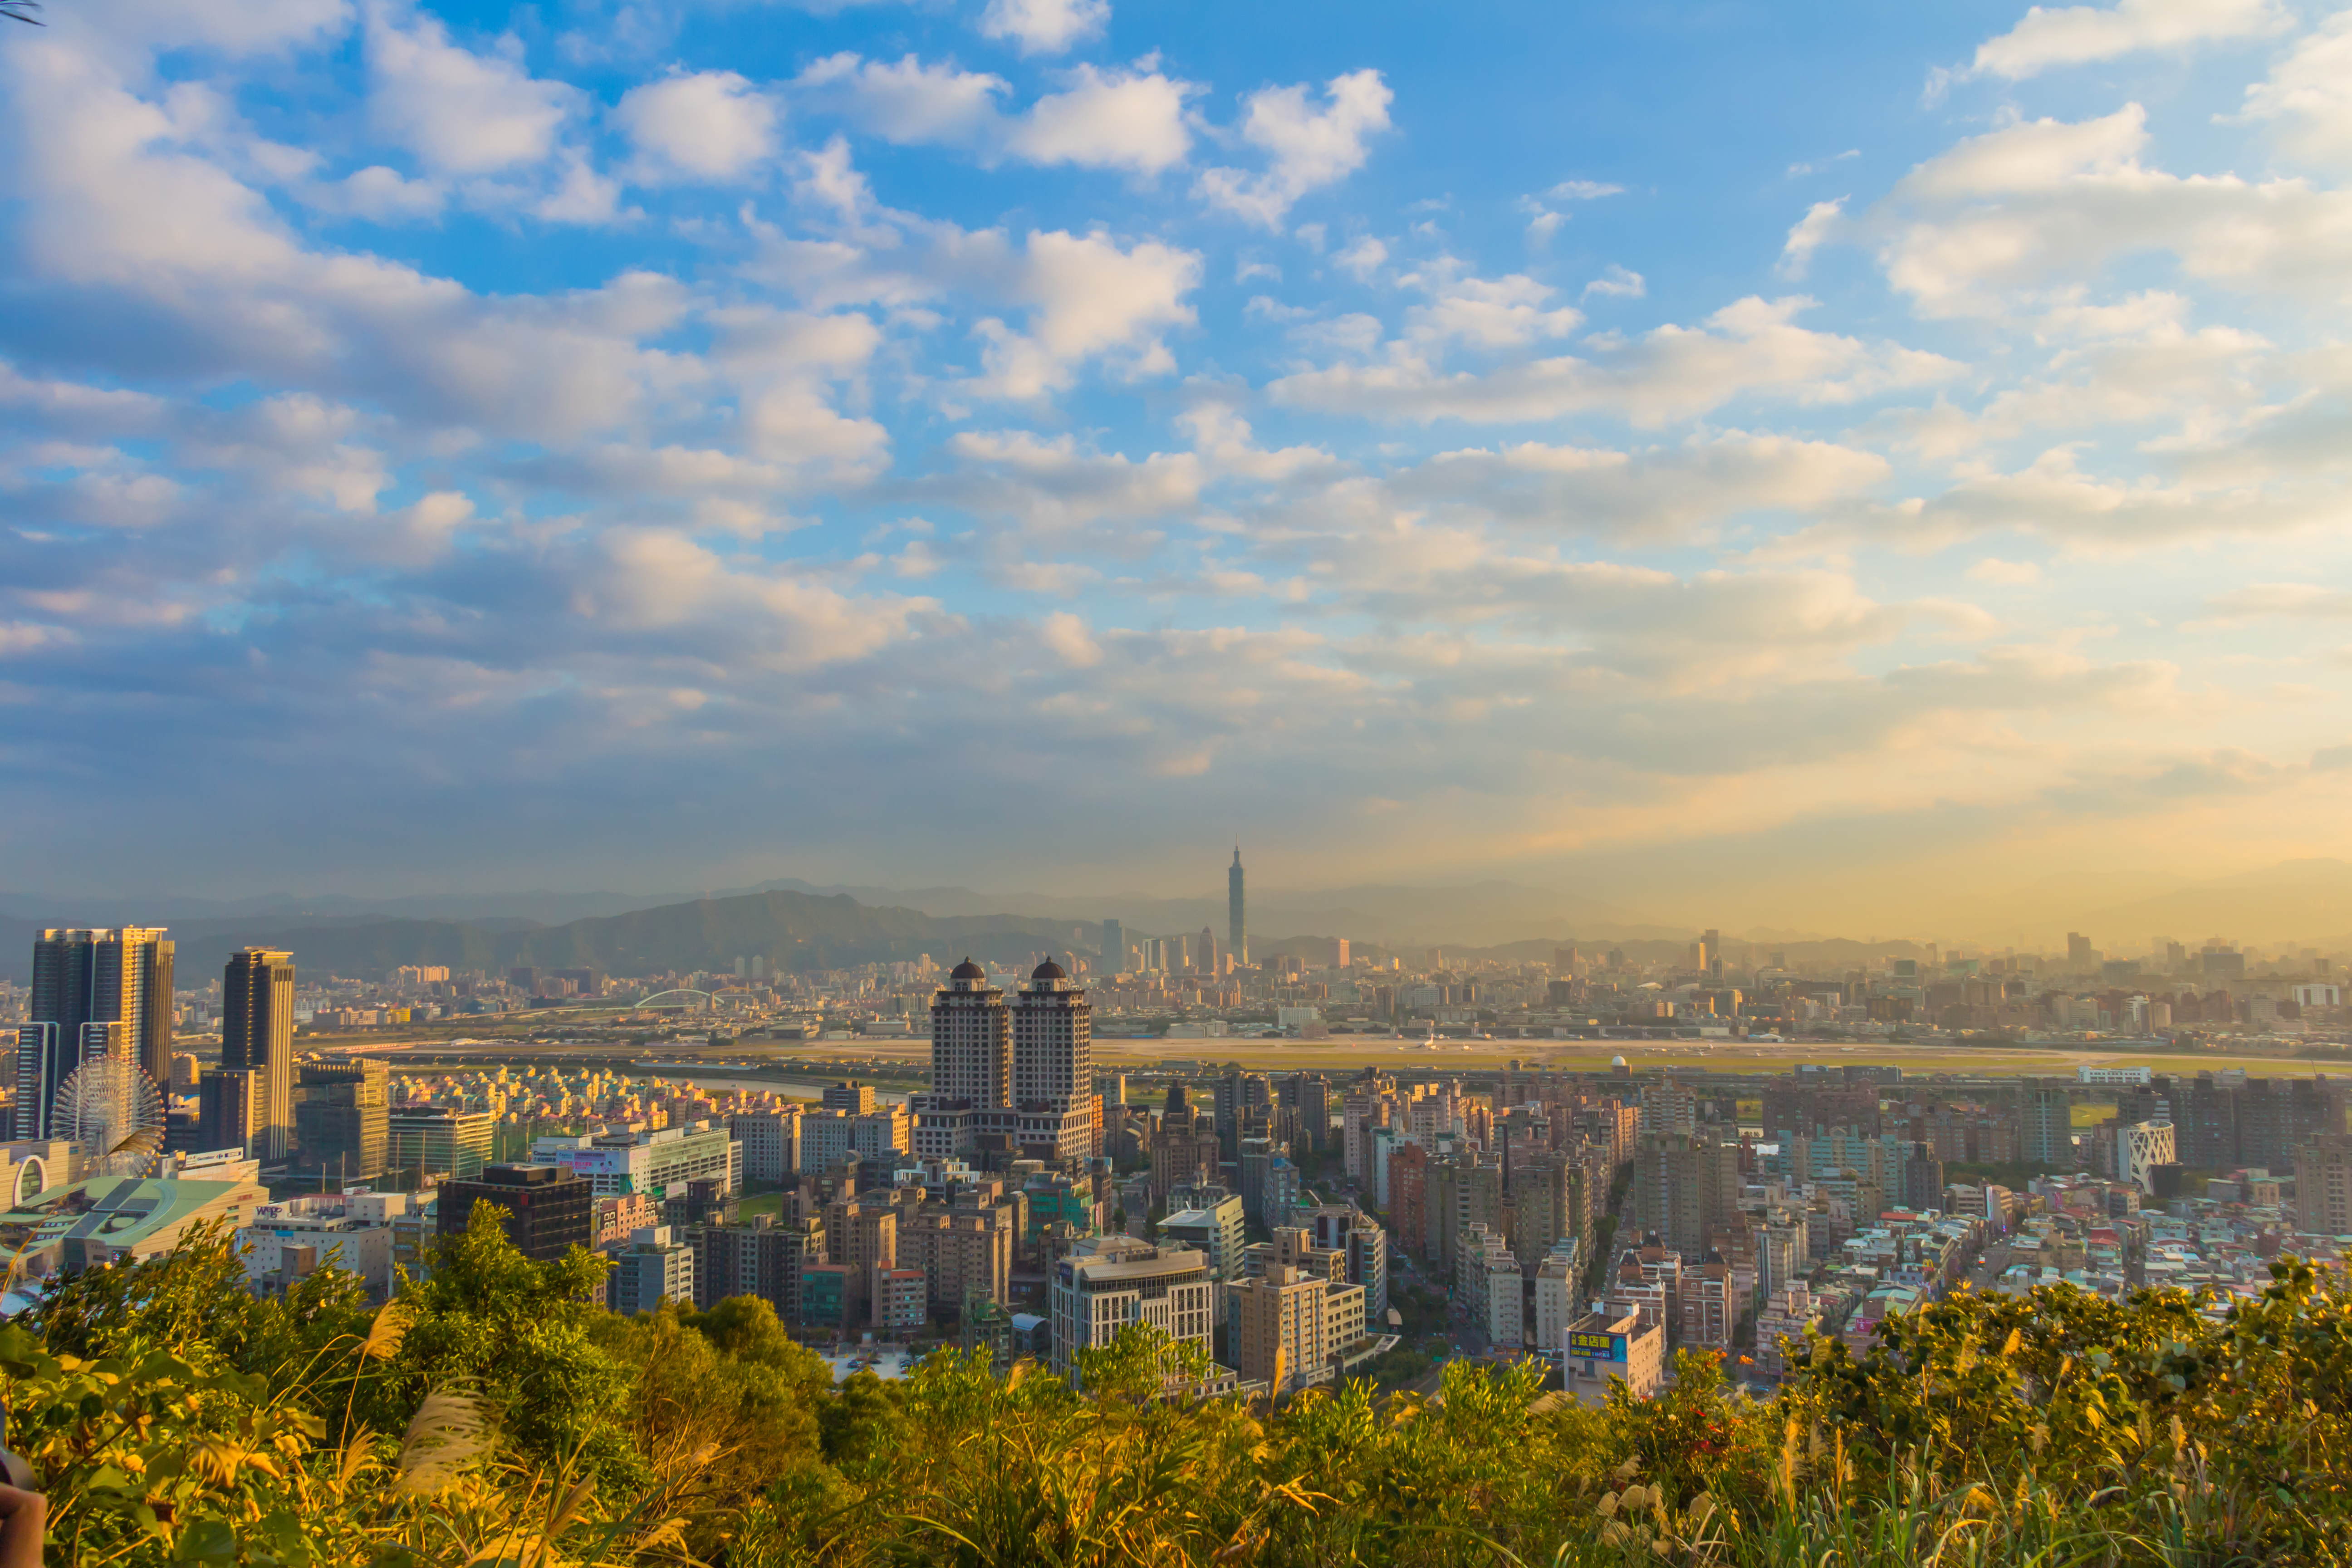 Đắm chìm trong khung cảnh đẹp mộng mơ của thành phố Đài Bắc khi xem bức ảnh chụp bầu trời thành phố. Sự hòa quyện giữa văn hóa truyền thống và hiện đại đã tạo nên một bức tranh tuyệt đẹp đầy sức hấp dẫn và thu hút.